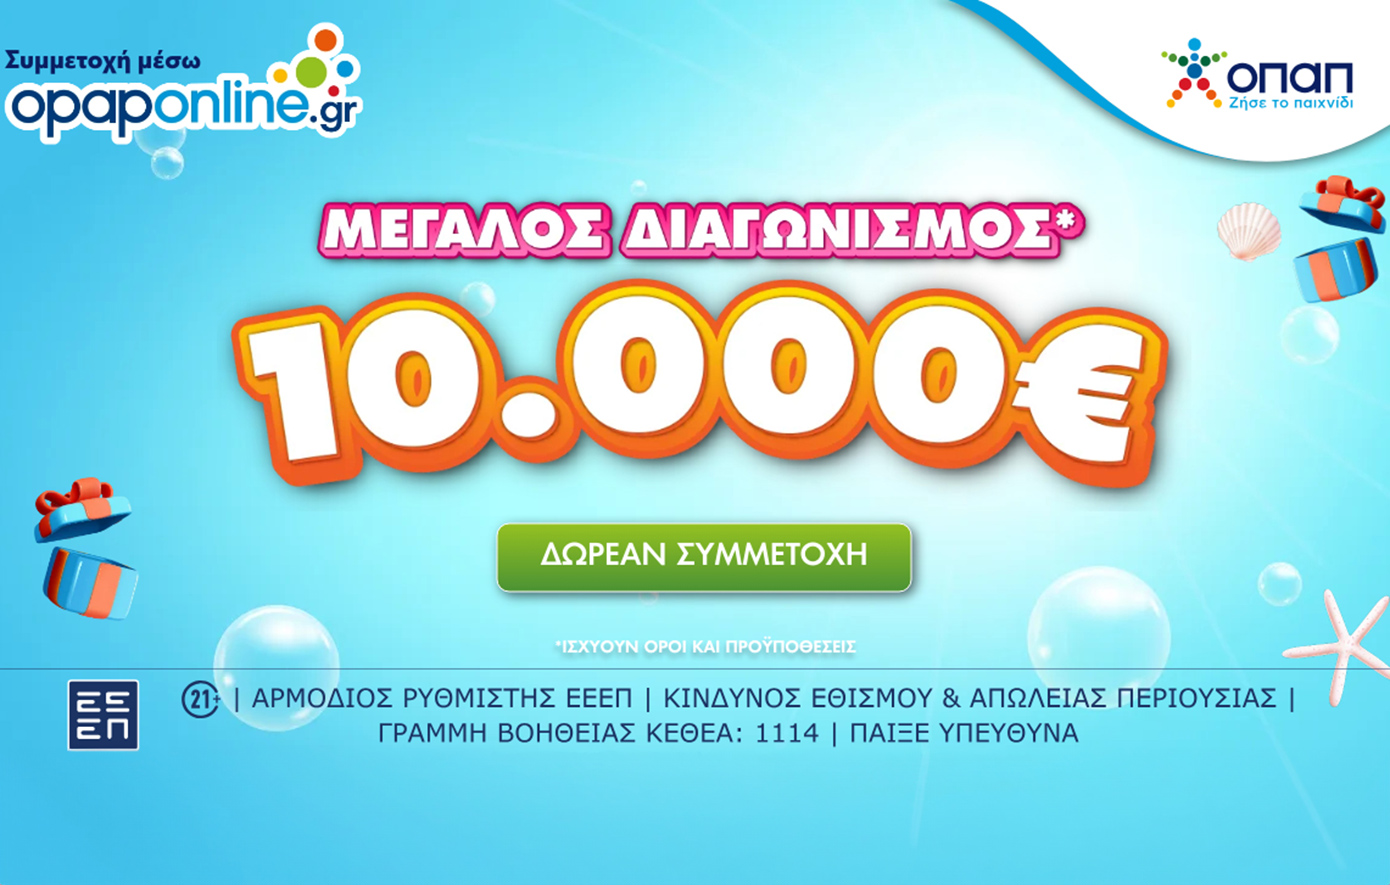 Μεγάλος διαγωνισμός για 10.000 ευρώ στο opaponline.gr